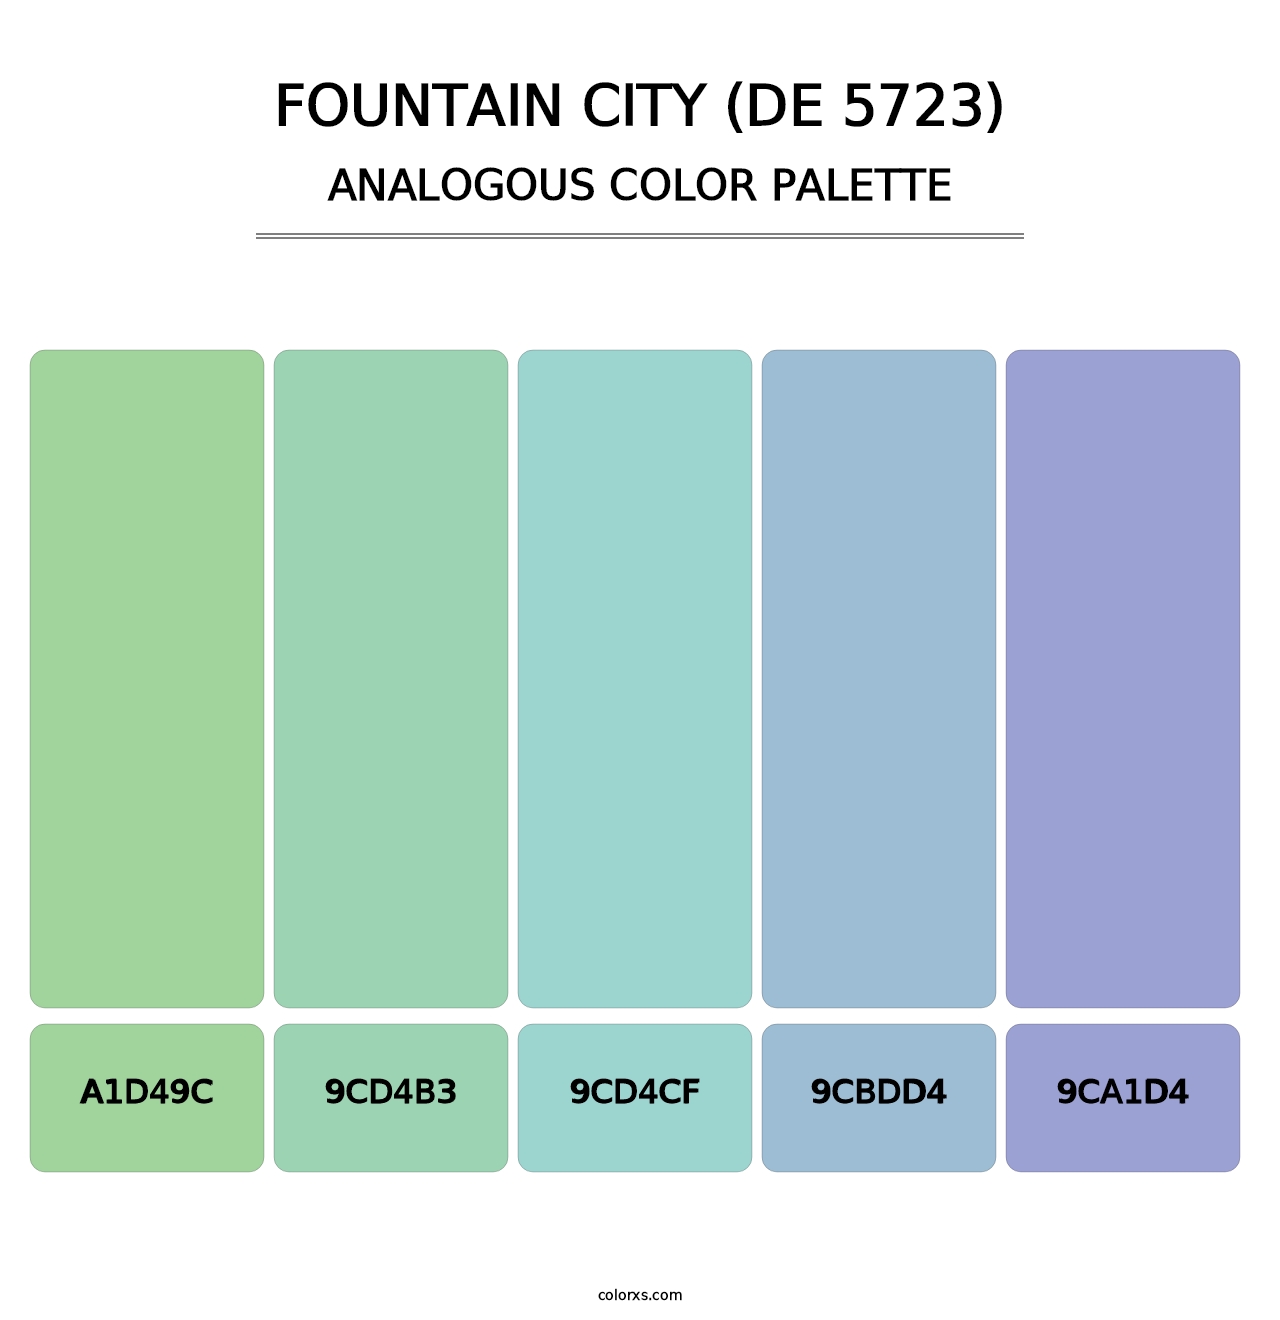 Fountain City (DE 5723) - Analogous Color Palette